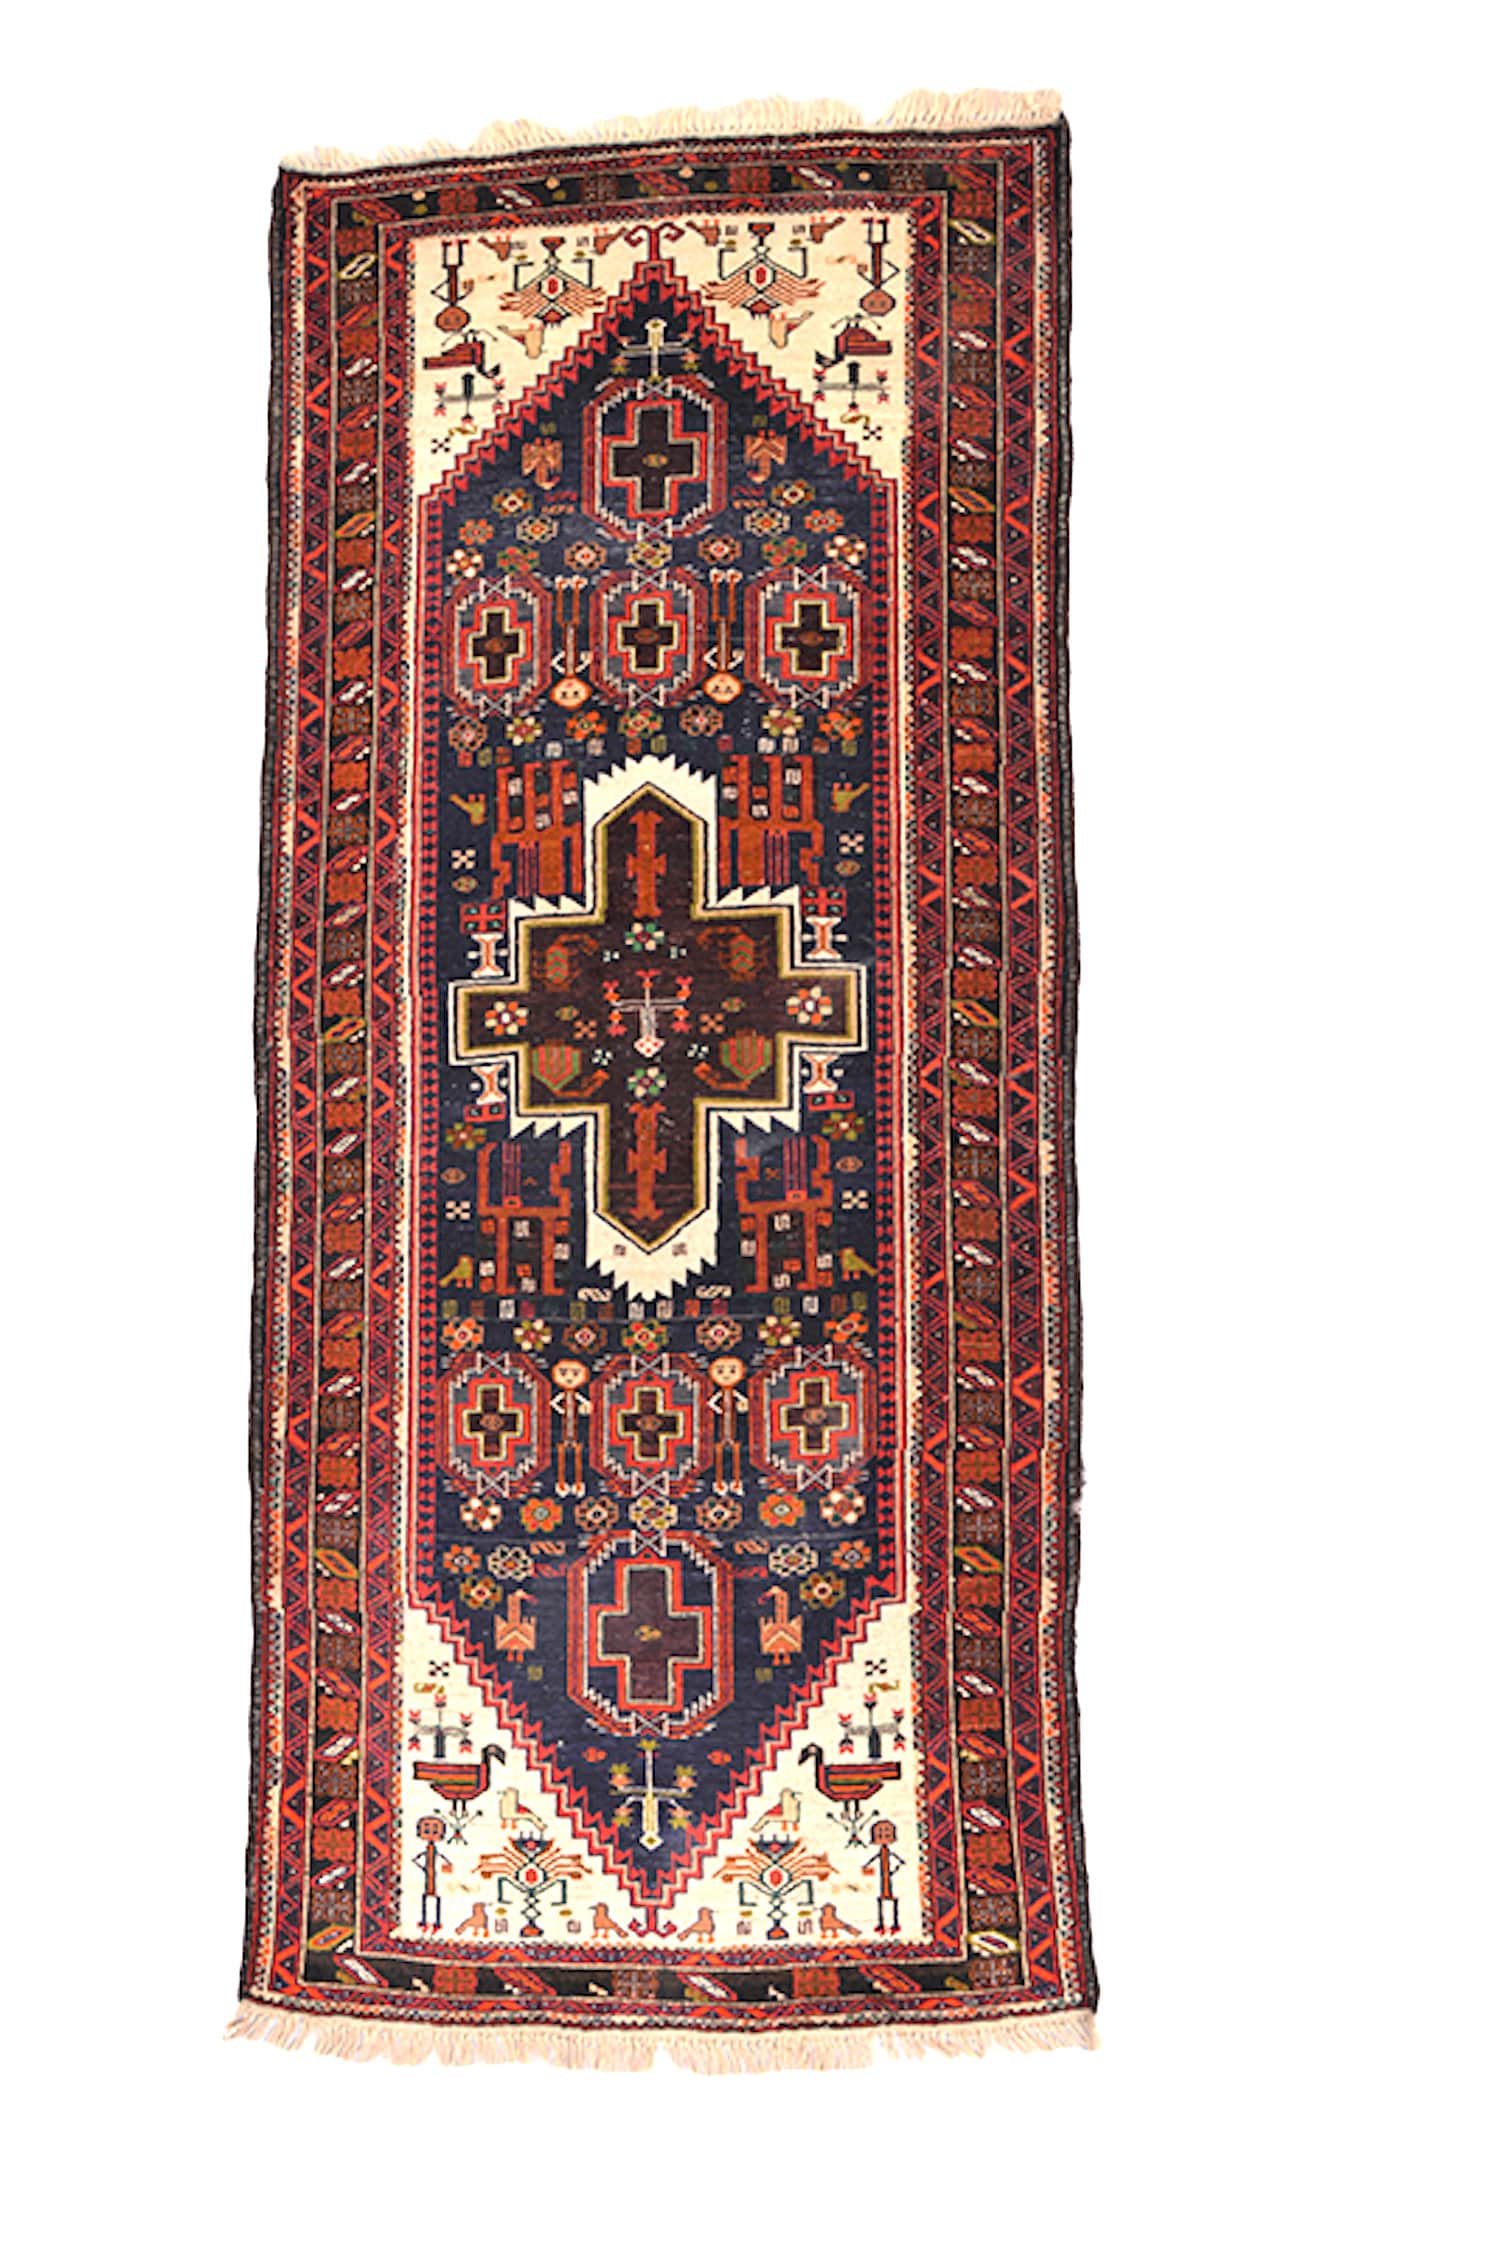 8 Feet x 3.5 Feet Runner Rug | Vintage Afghan Rug |Red Bright Rug | Wool Handwoven Runner | Persian Tribal Geometric | Kitchen Hallway Rug